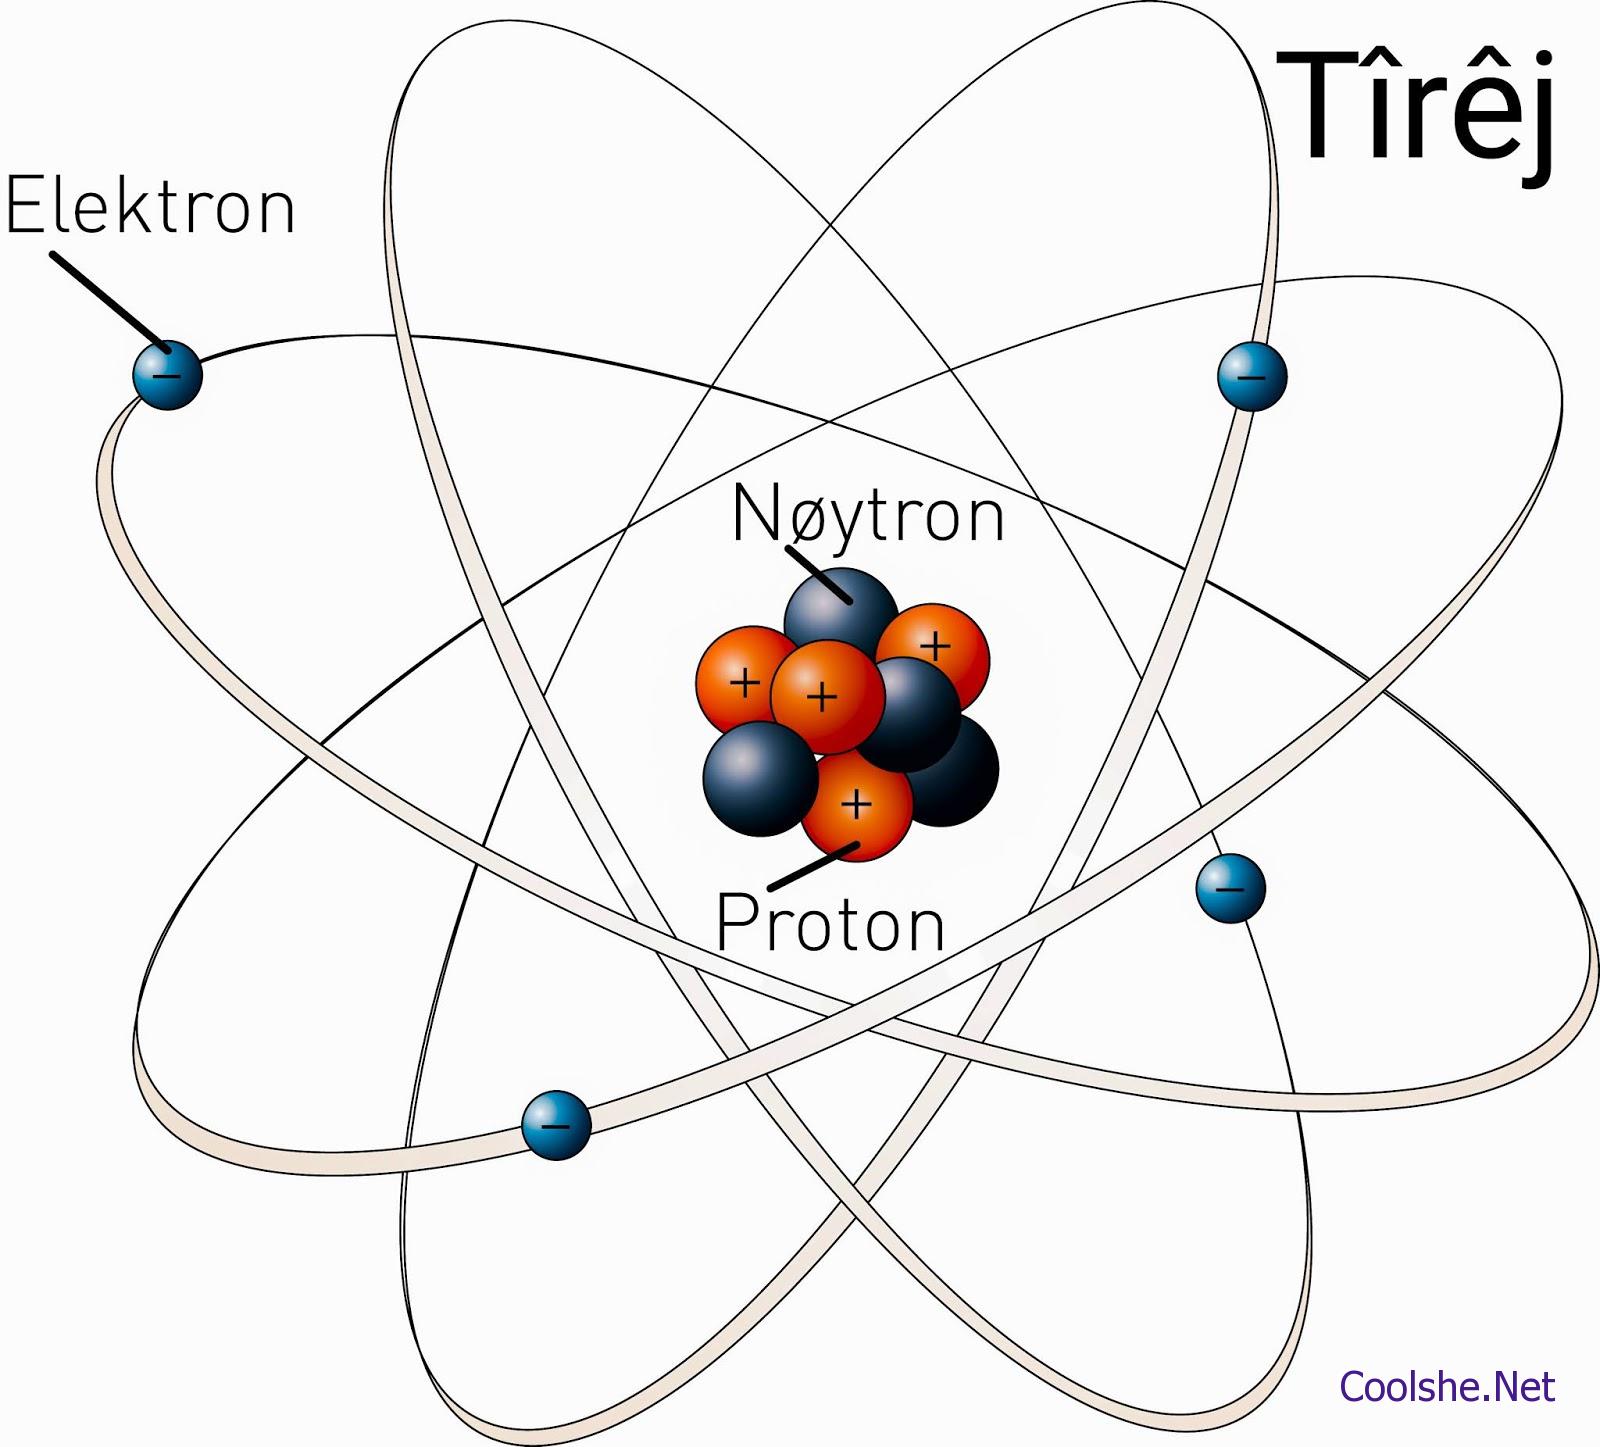 توجد الكترونات الذرة في بيت العلم